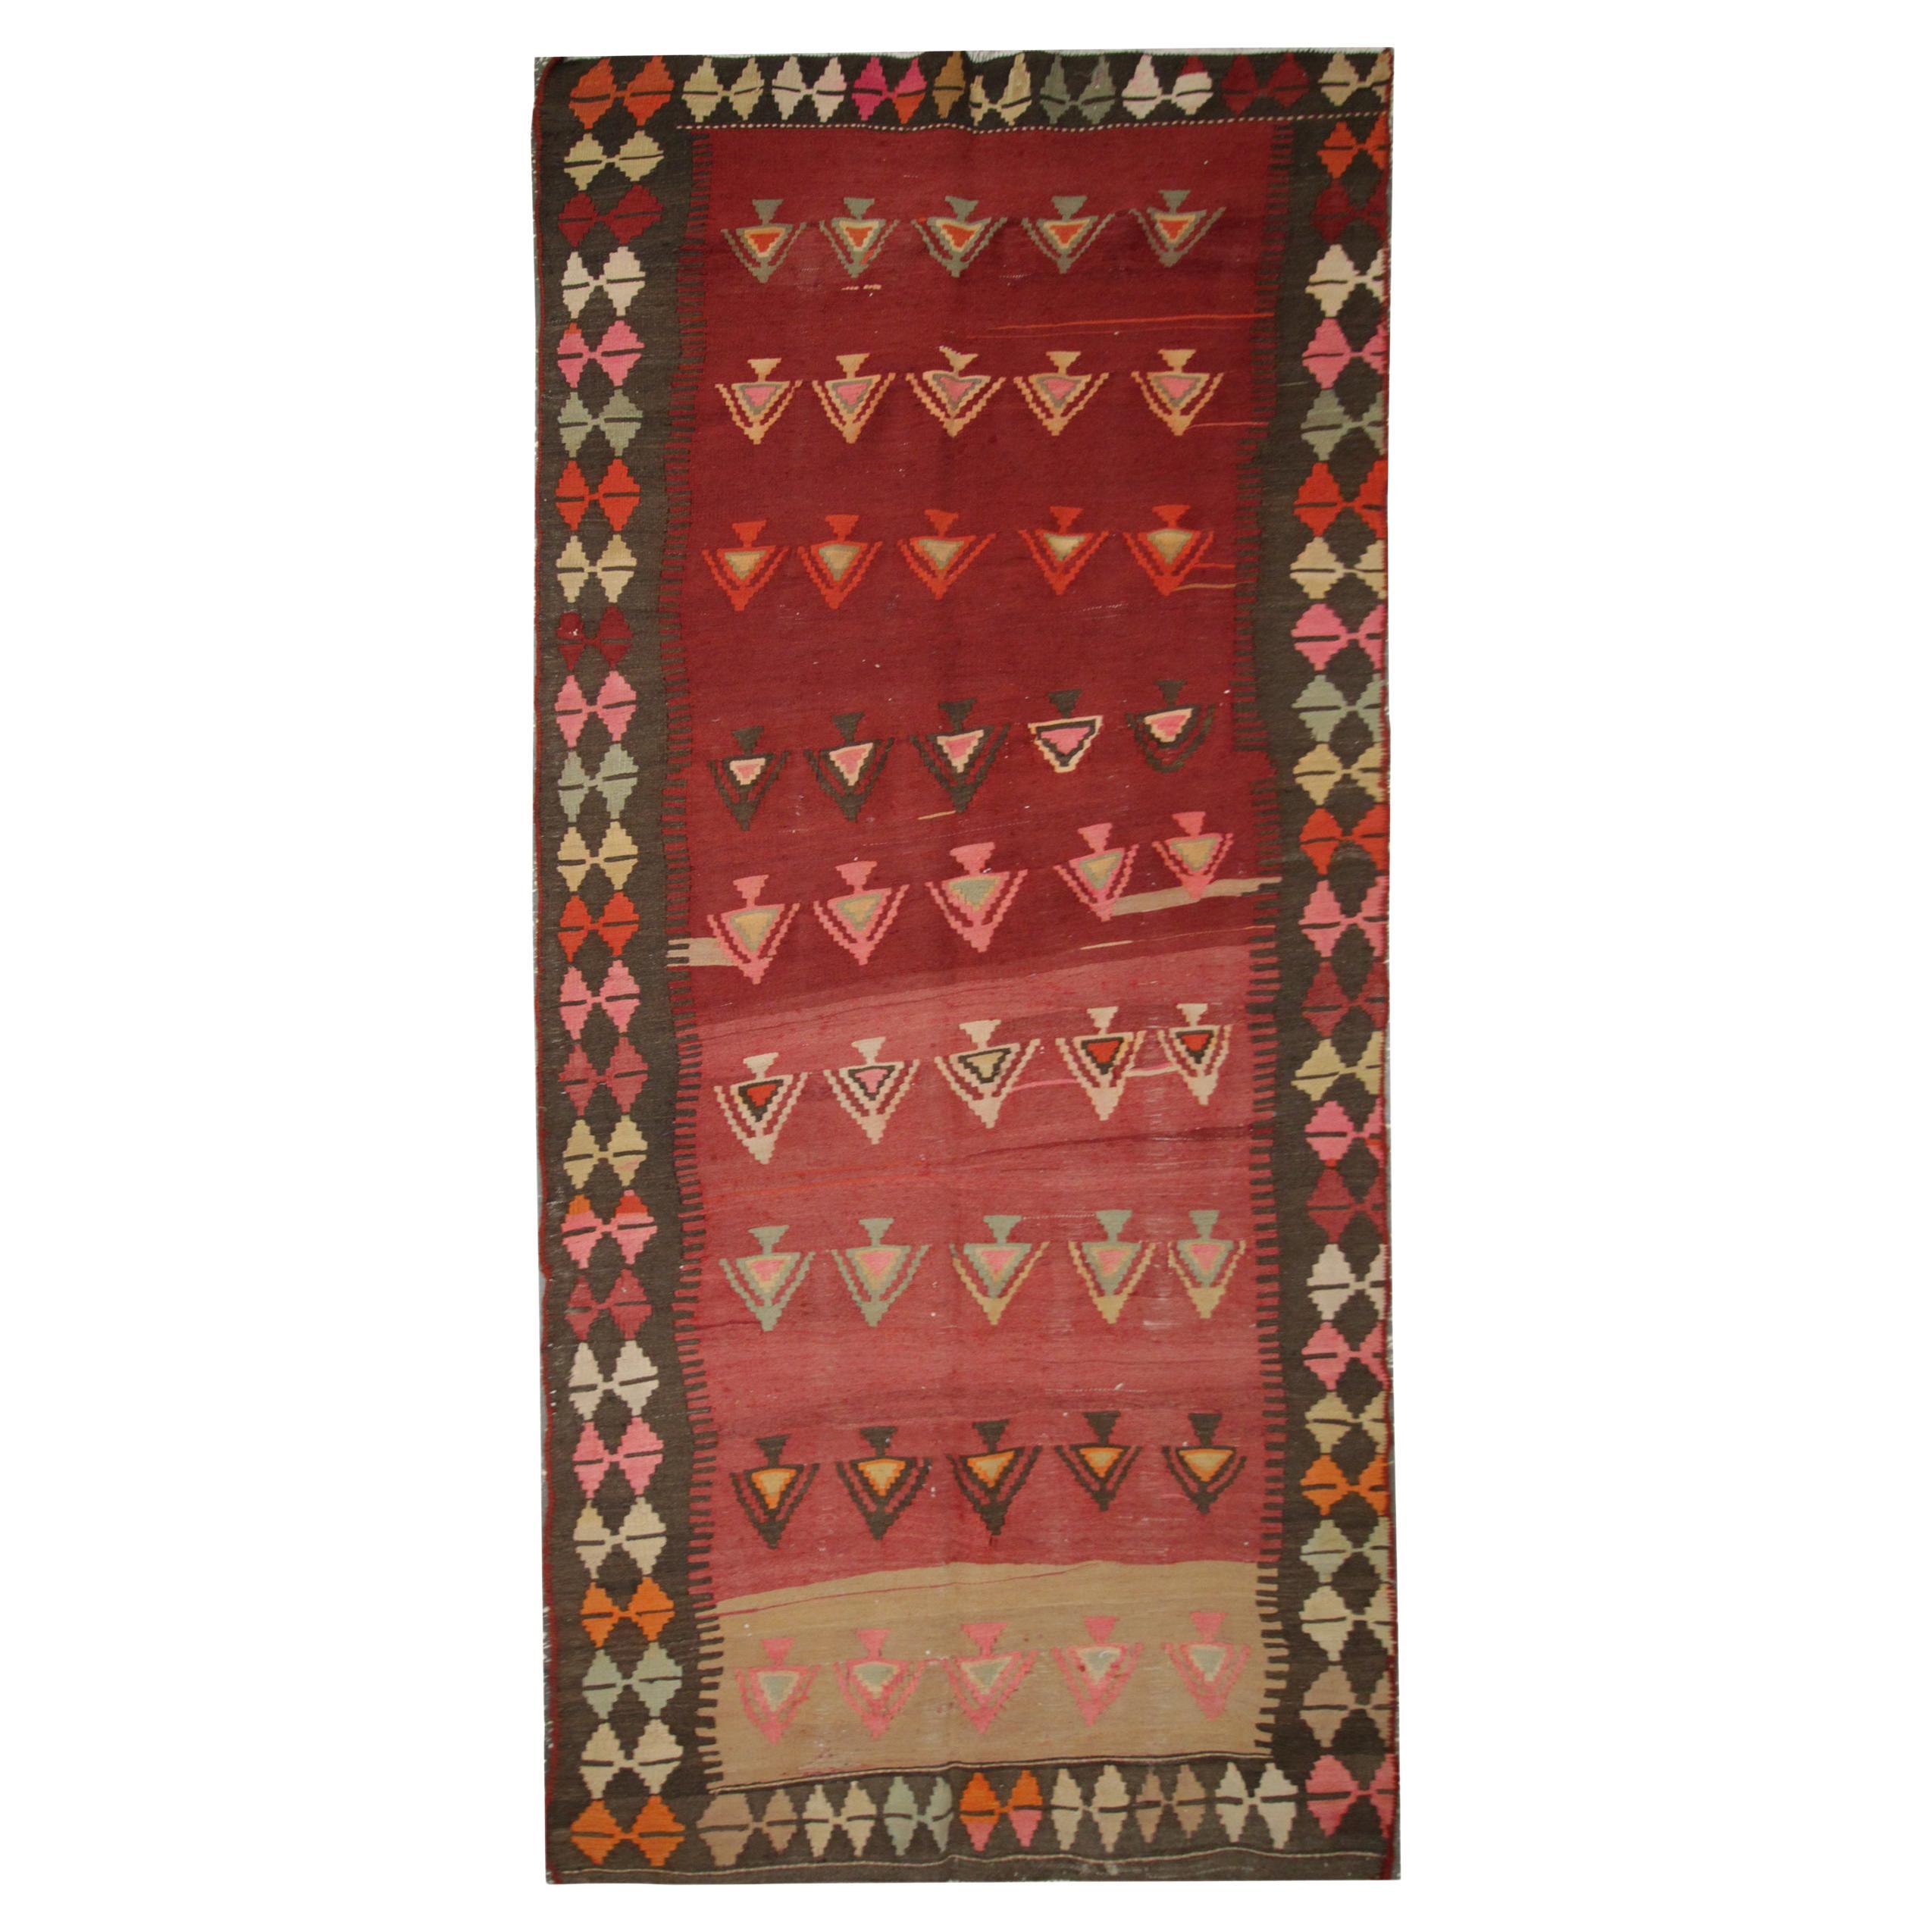 Tapis Kilim vintage fait main, tapis traditionnel en laine rouge tribale